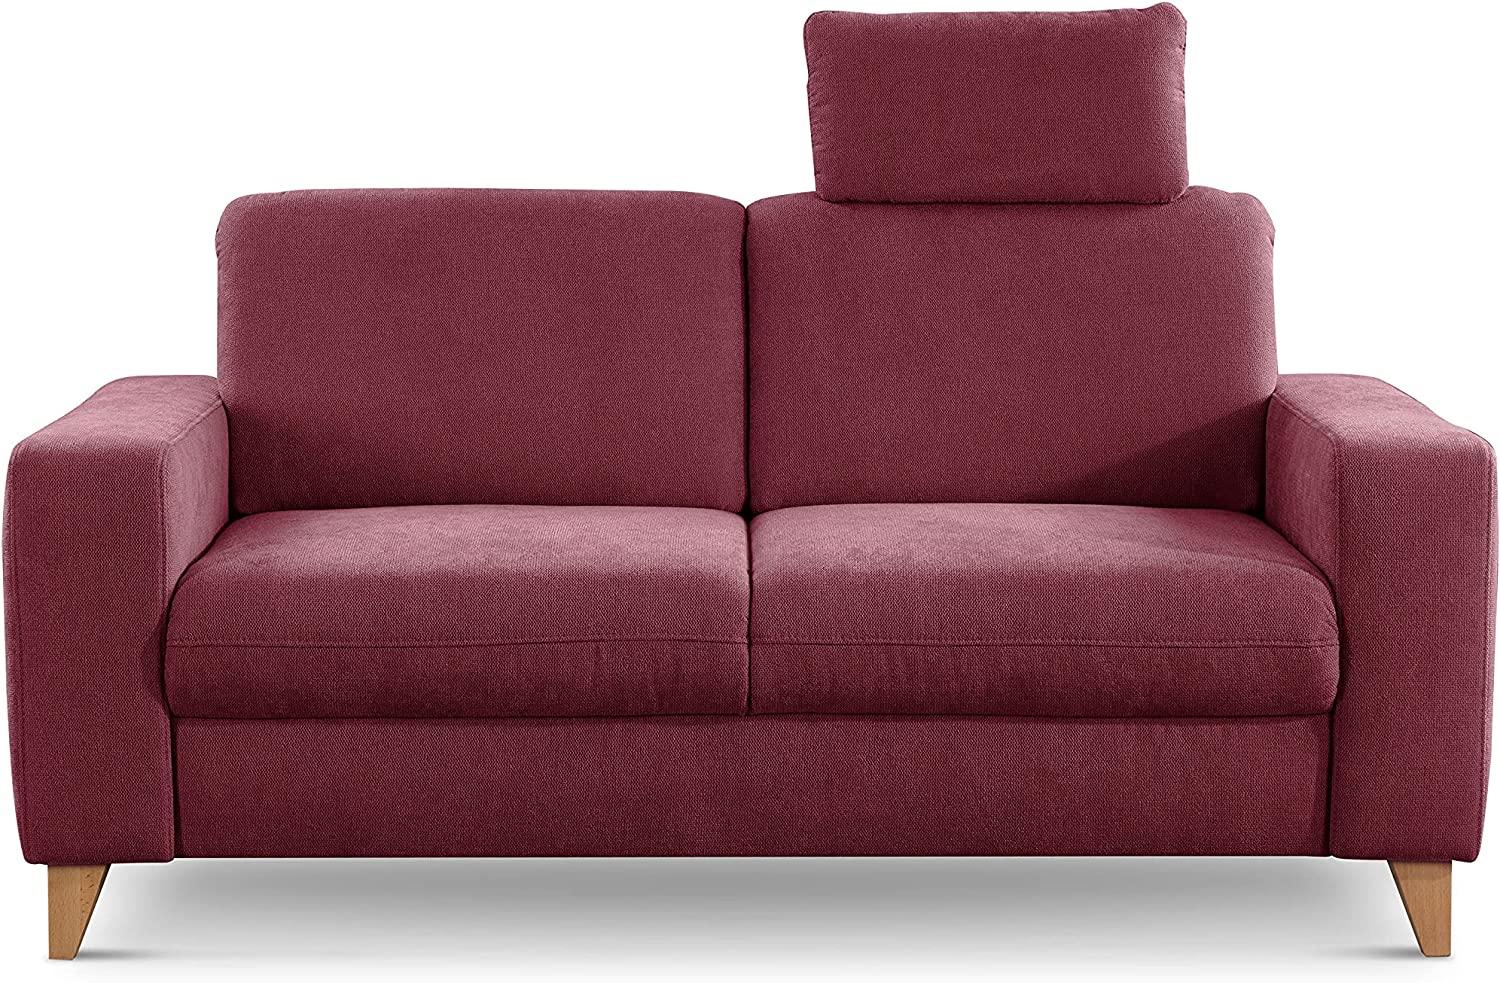 CAVADORE 2er Sofa Lotta / Skandinavische 2-Sitzer-Couch mit Federkern, Kopfstütze und Holzfüßen / 173 x 88 x 88 / Webstoff, Rot Bild 1